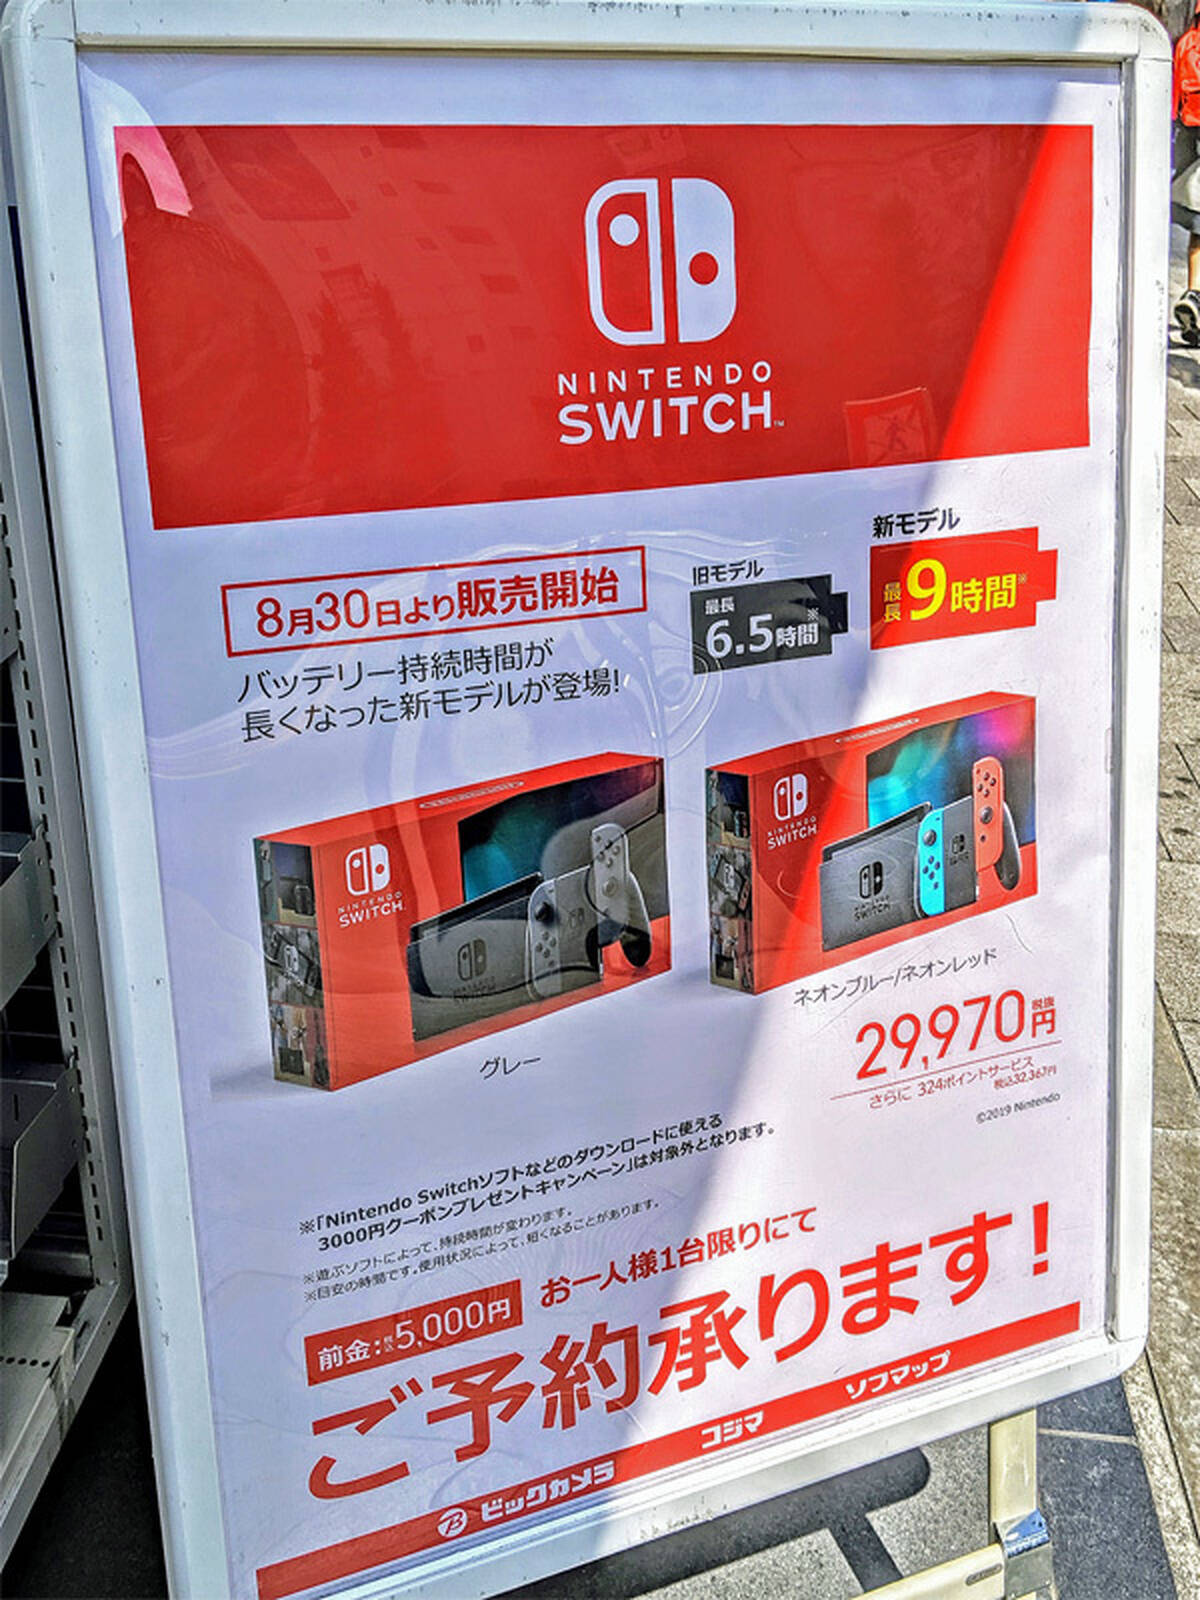 ビックカメラグループでバッテリー持続時間が長くなった Nintendo Switch 新モデルの販売を8月30日より開始 アキバ総研